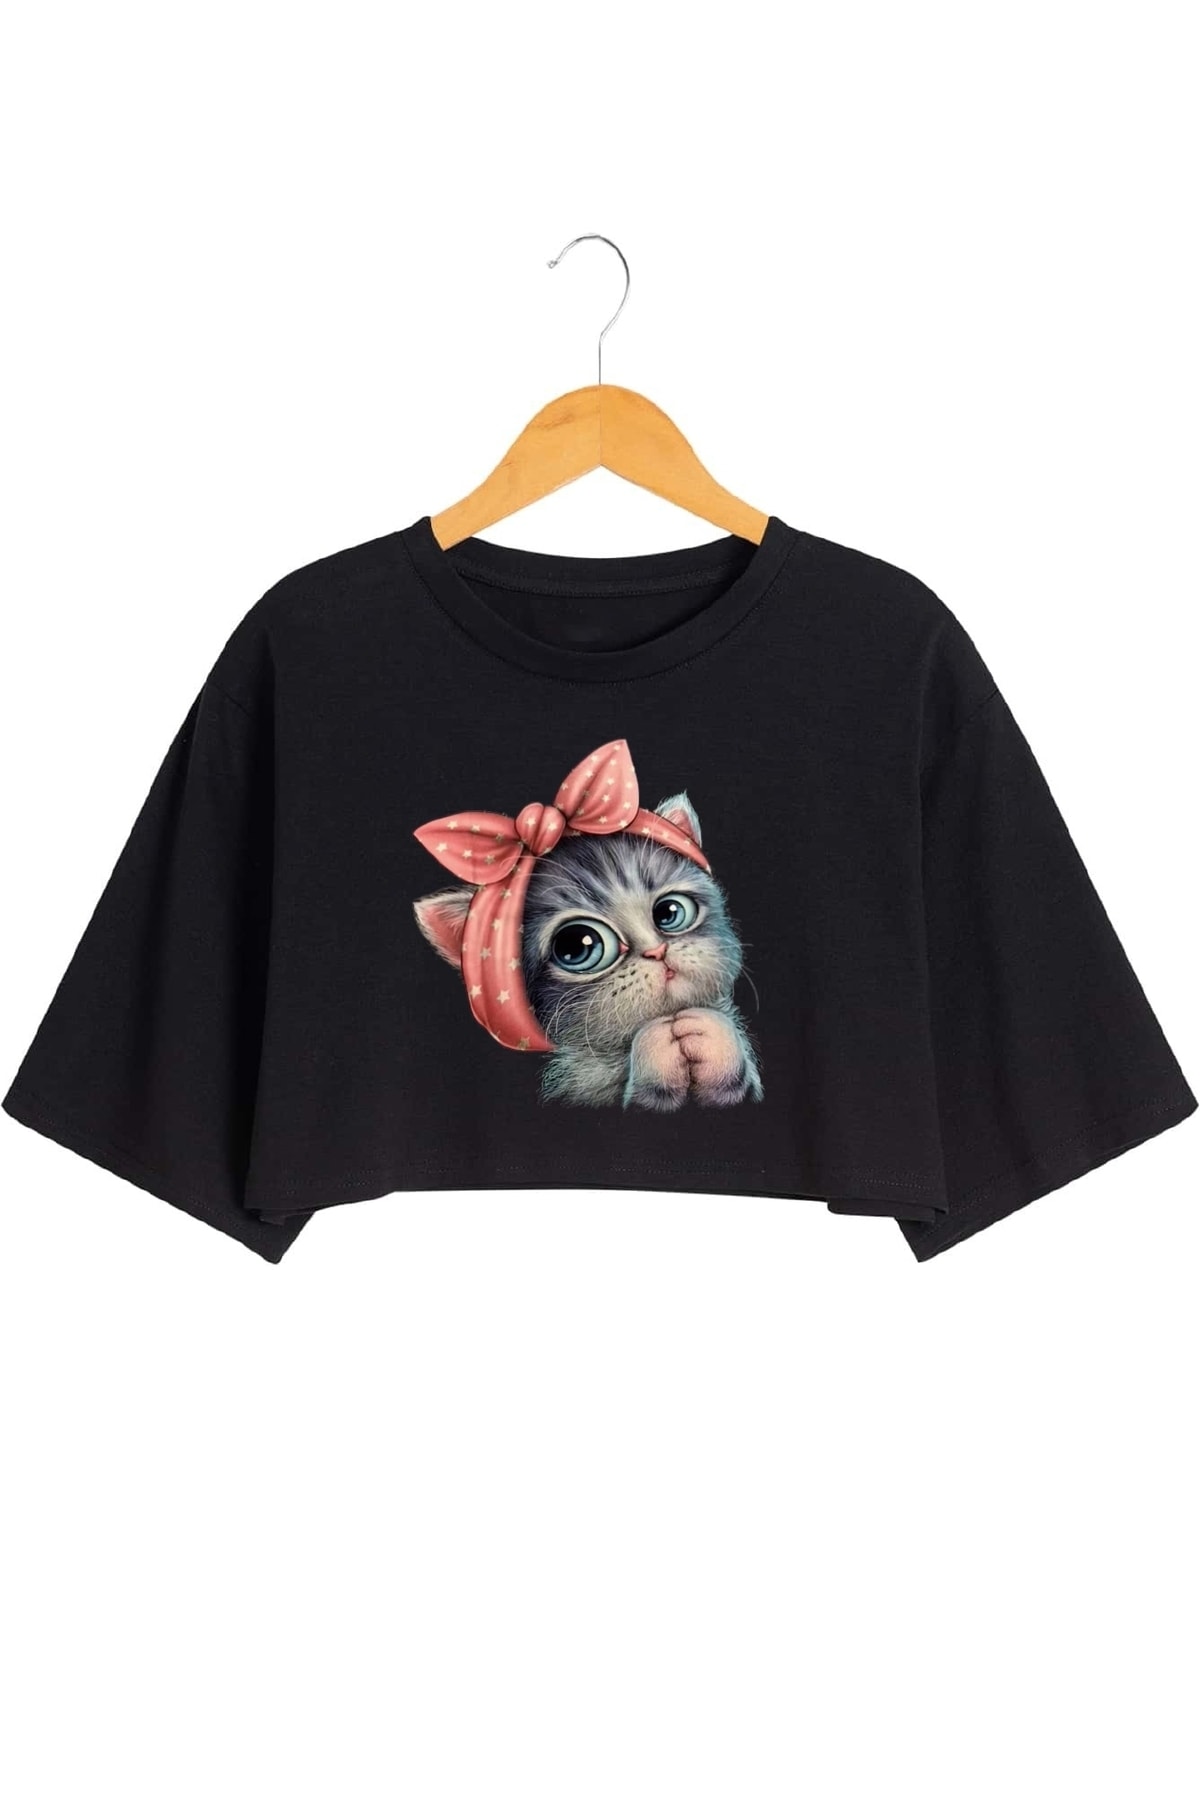 viptasarımtshirt Kadın Sevimli Minik Kedi Baskılı Crop T-shirt